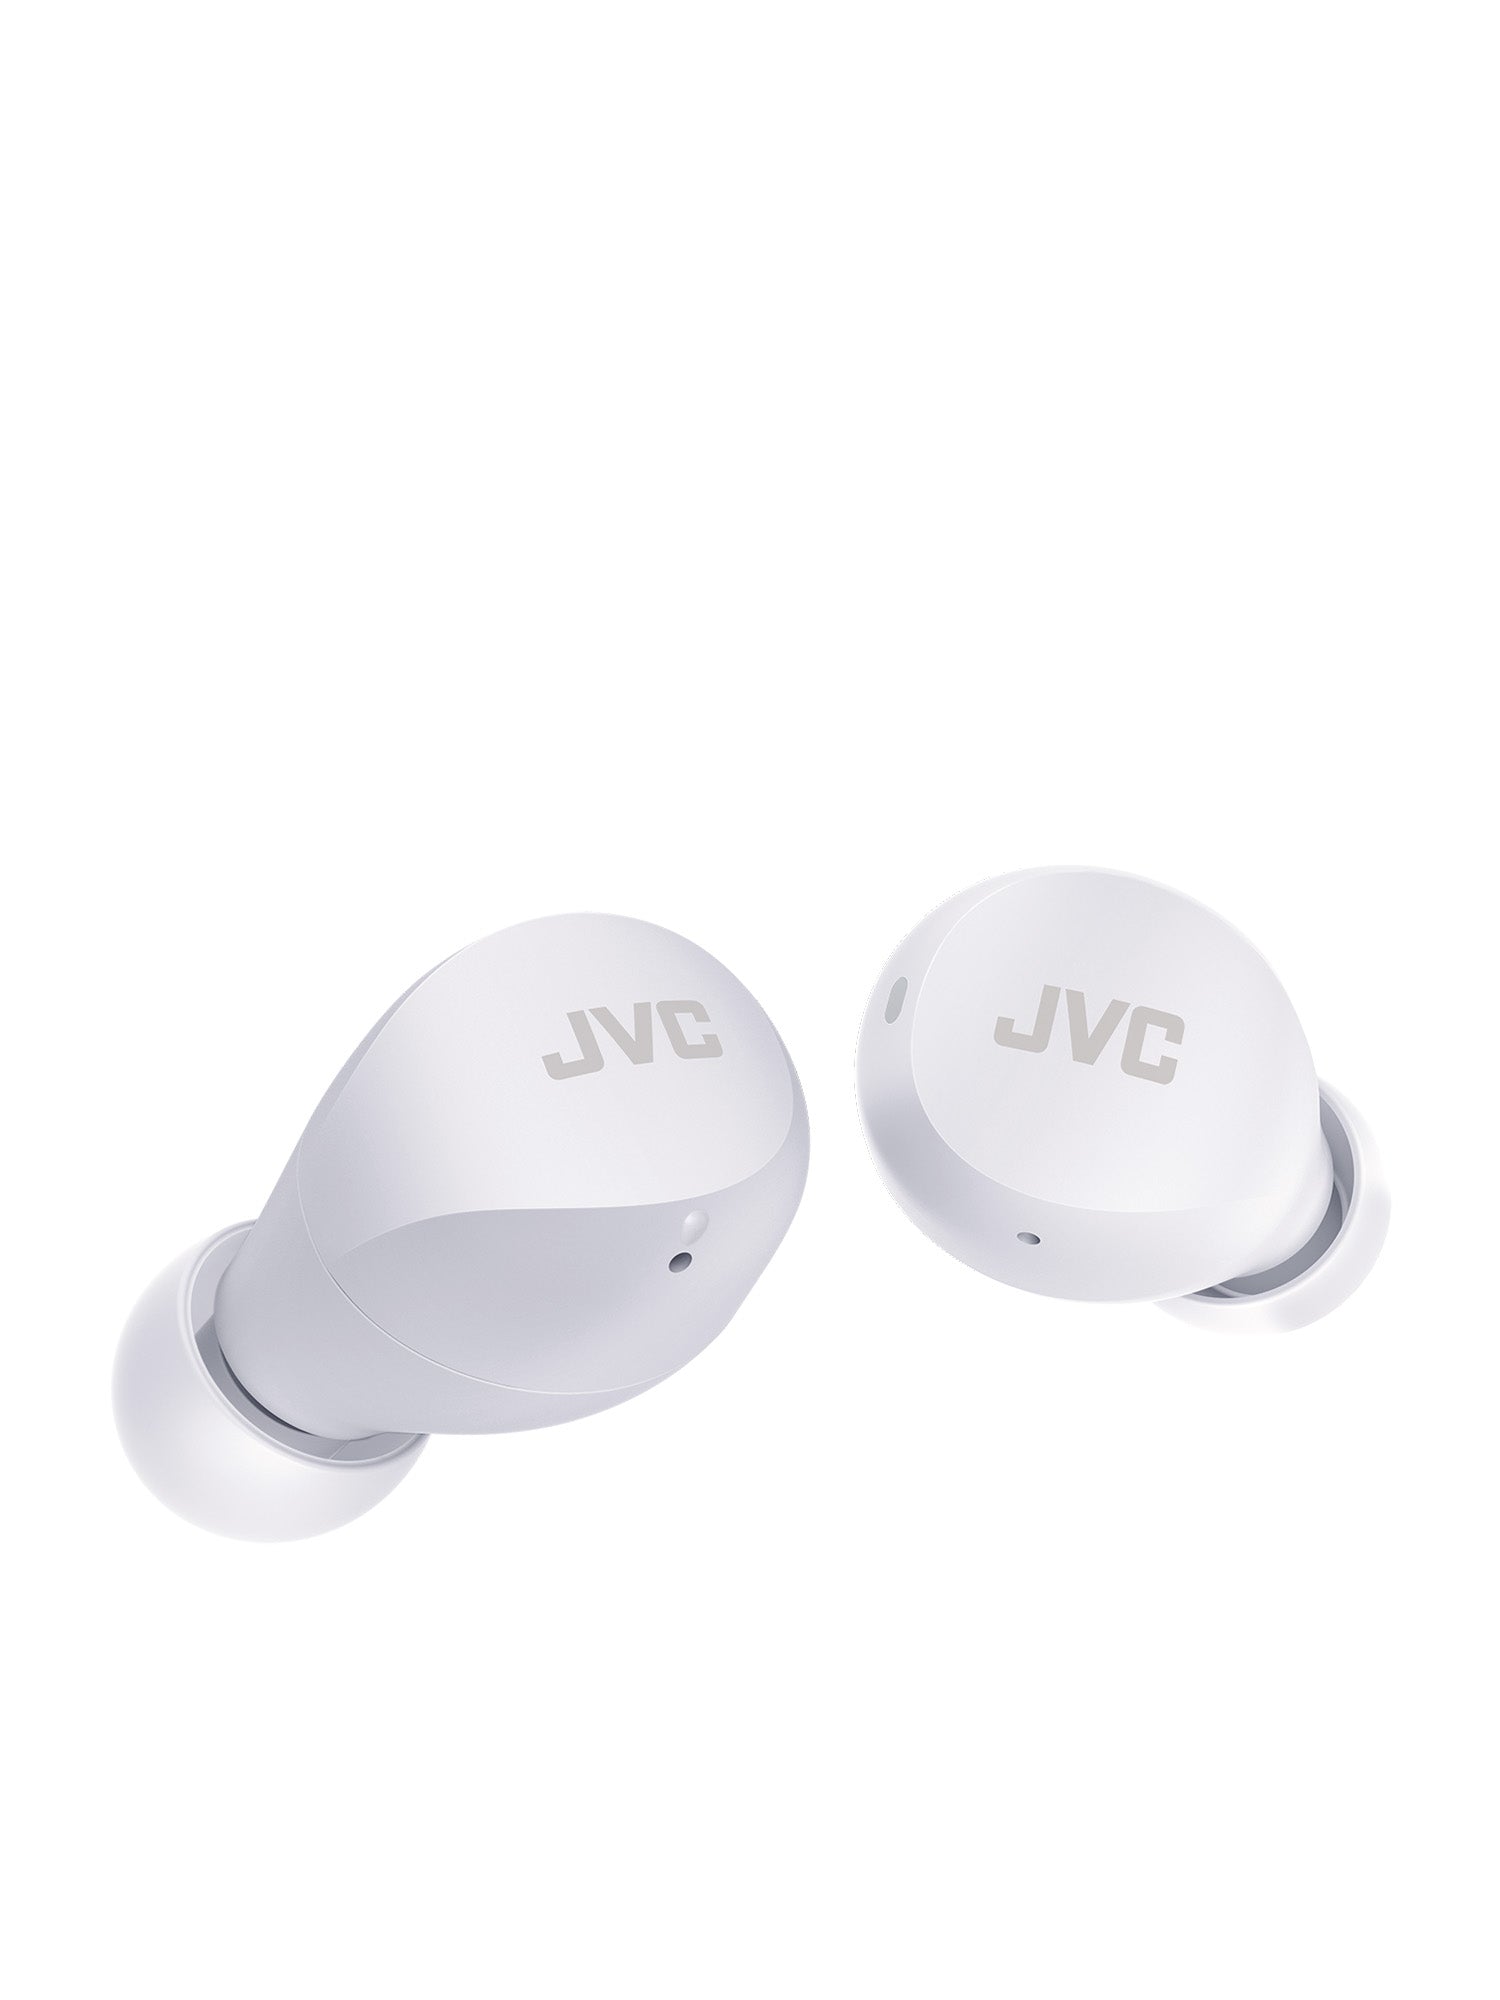 HA-A6T-W in white Gumy mini wireless earbuds by JVC